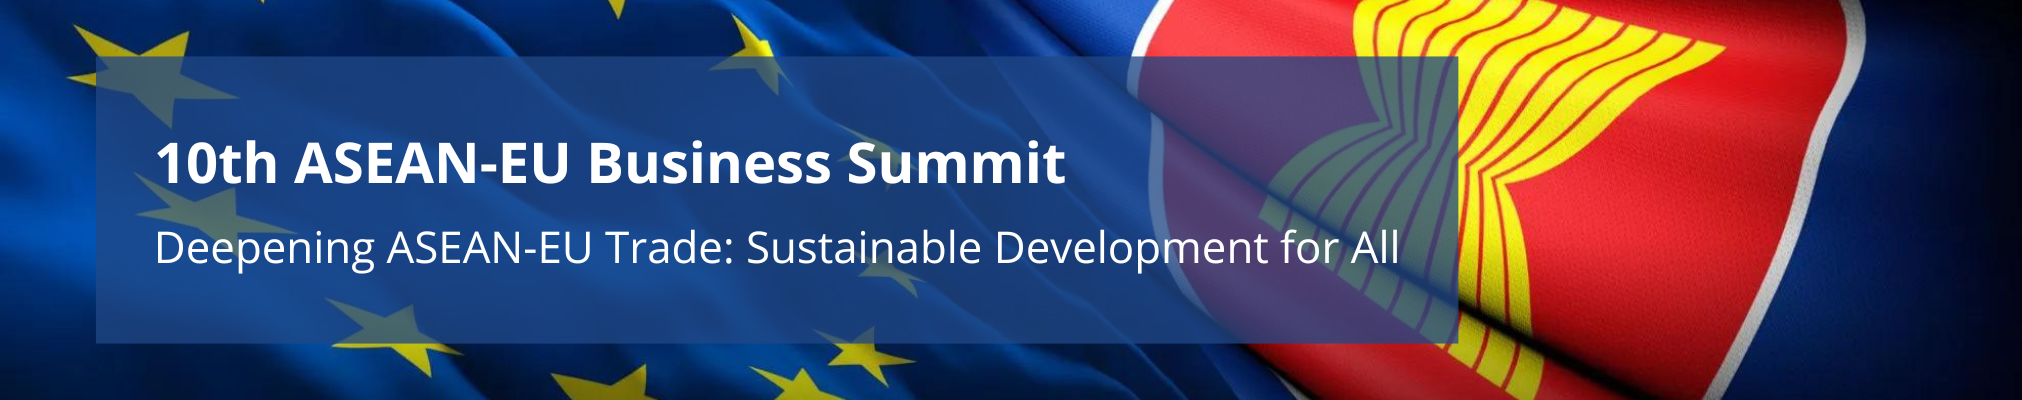 10th ASEAN-EU Business Summit (3)